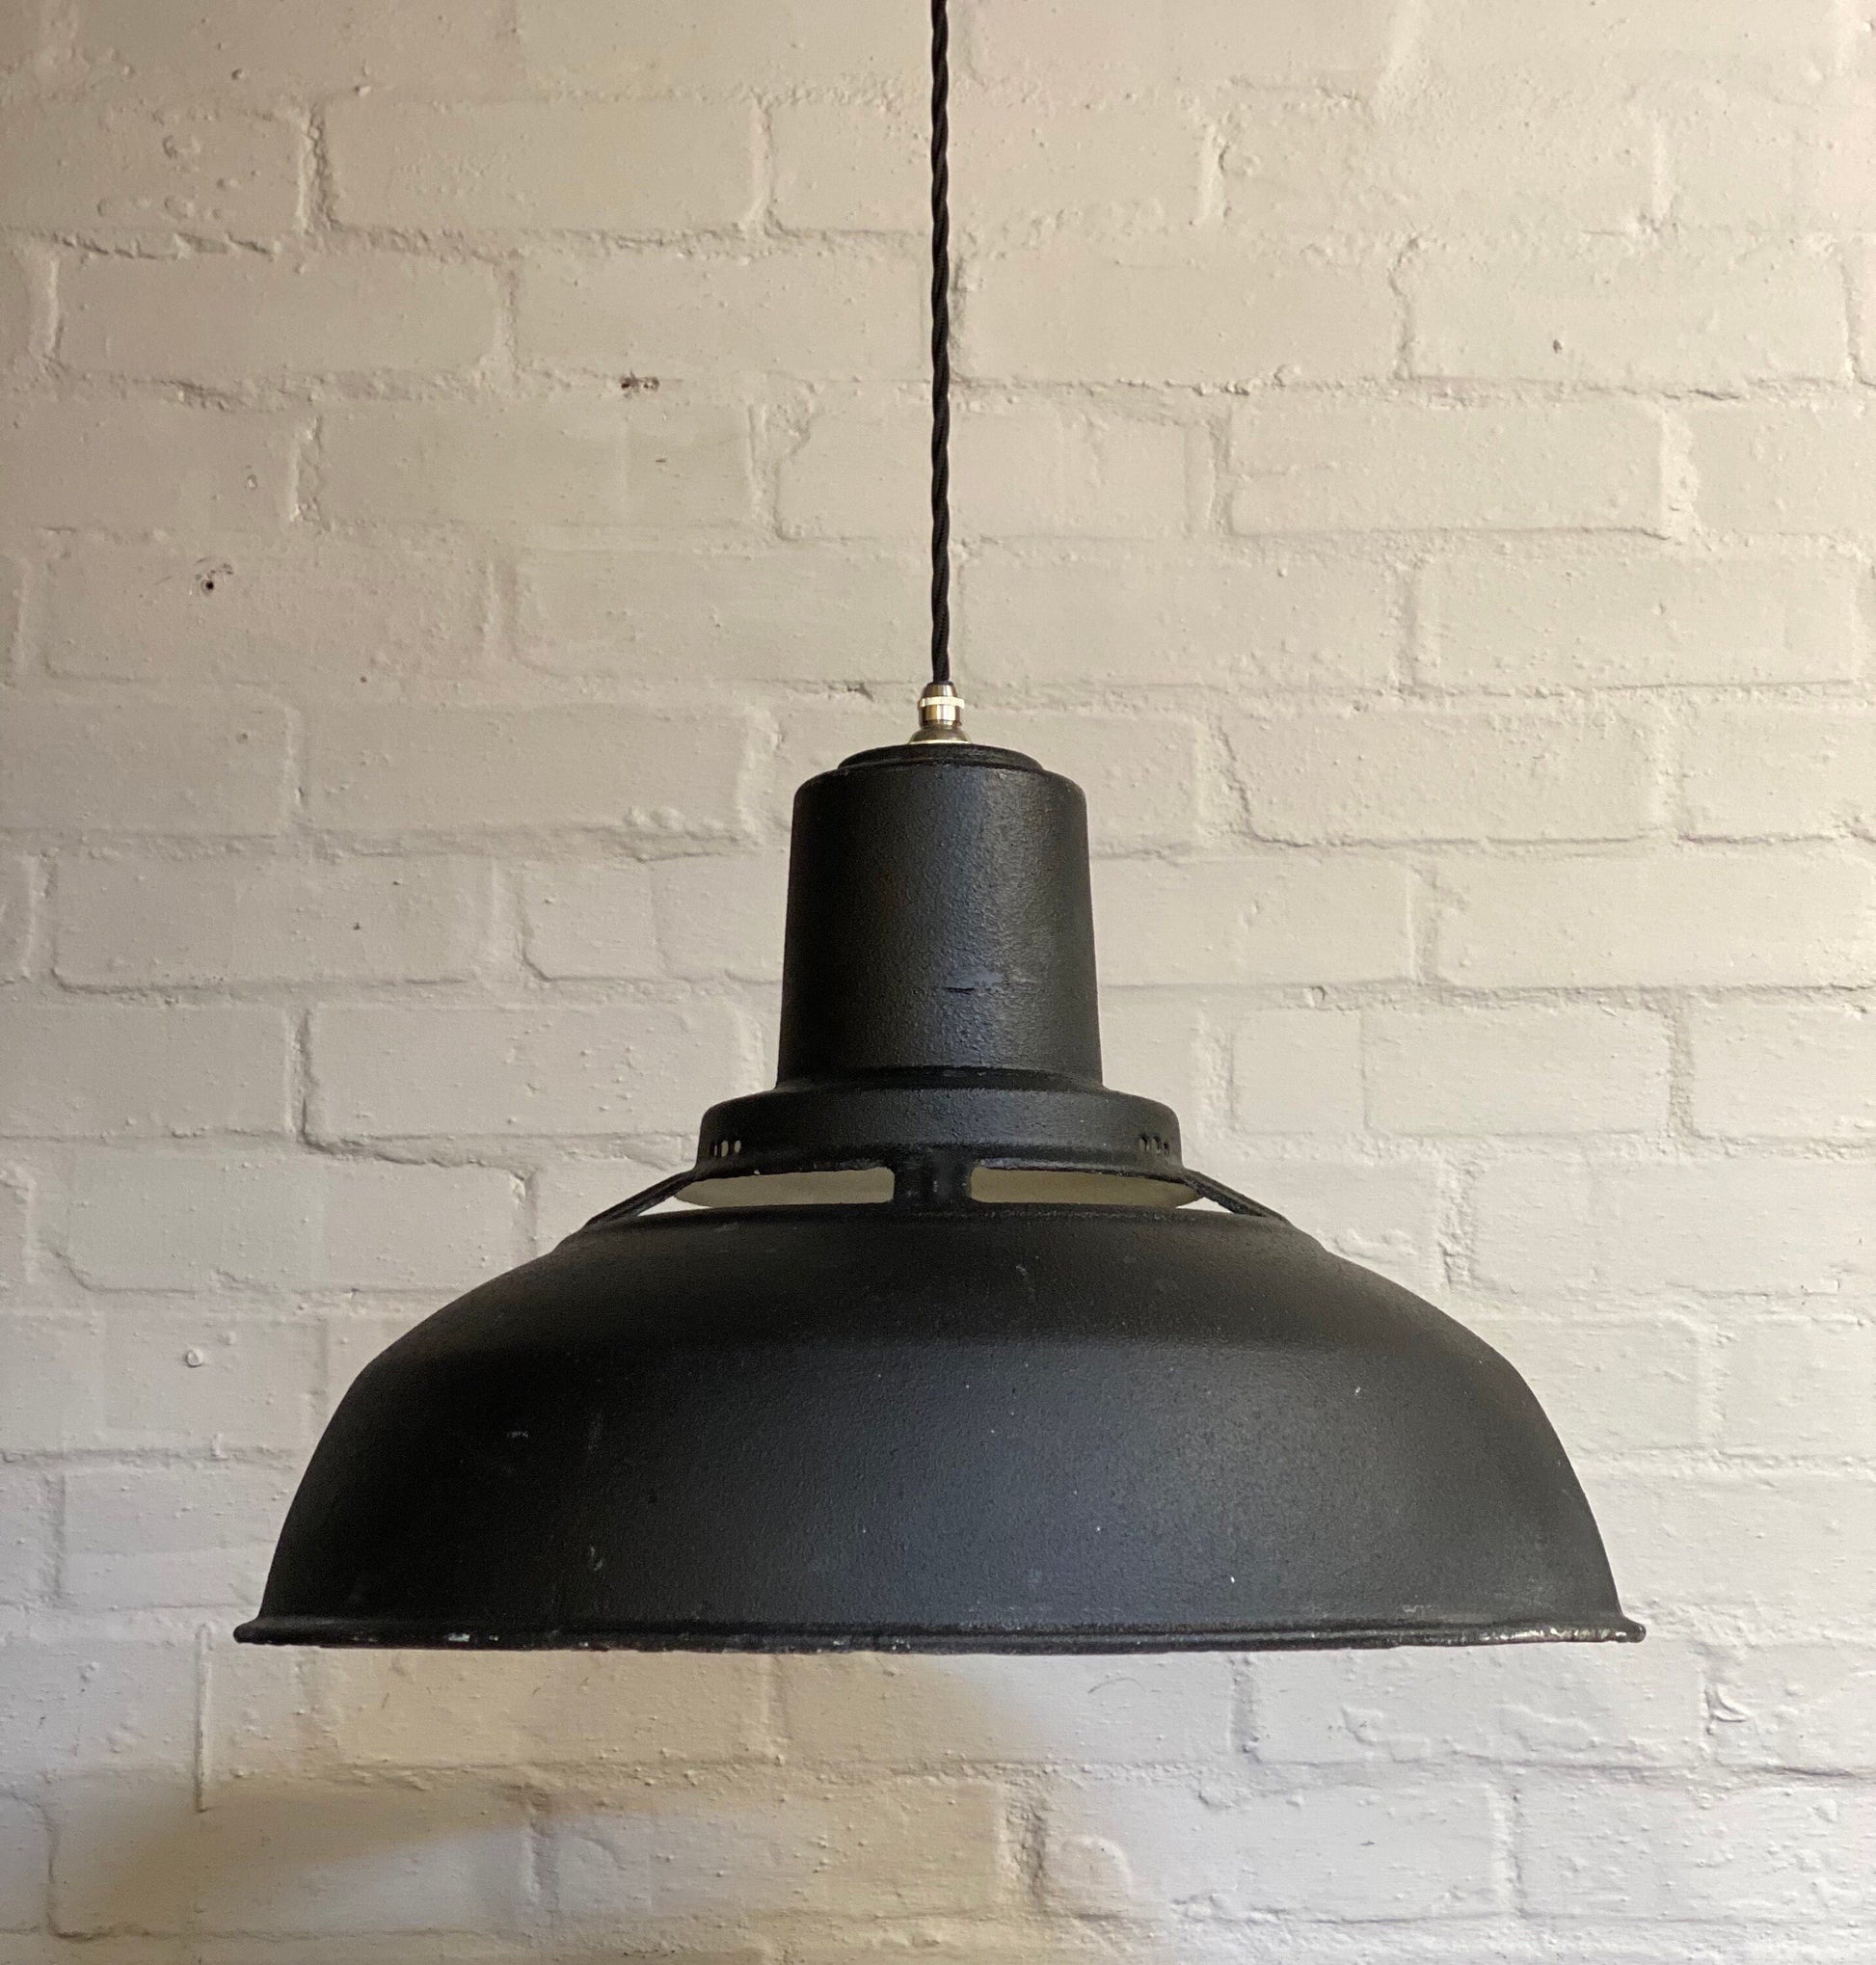 Geniune Black Solid Benjamin Saflux Shade 1940’s Pendant Set Light | Ceiling Dining Room | Kitchen Table | Vintage Filament Bulb